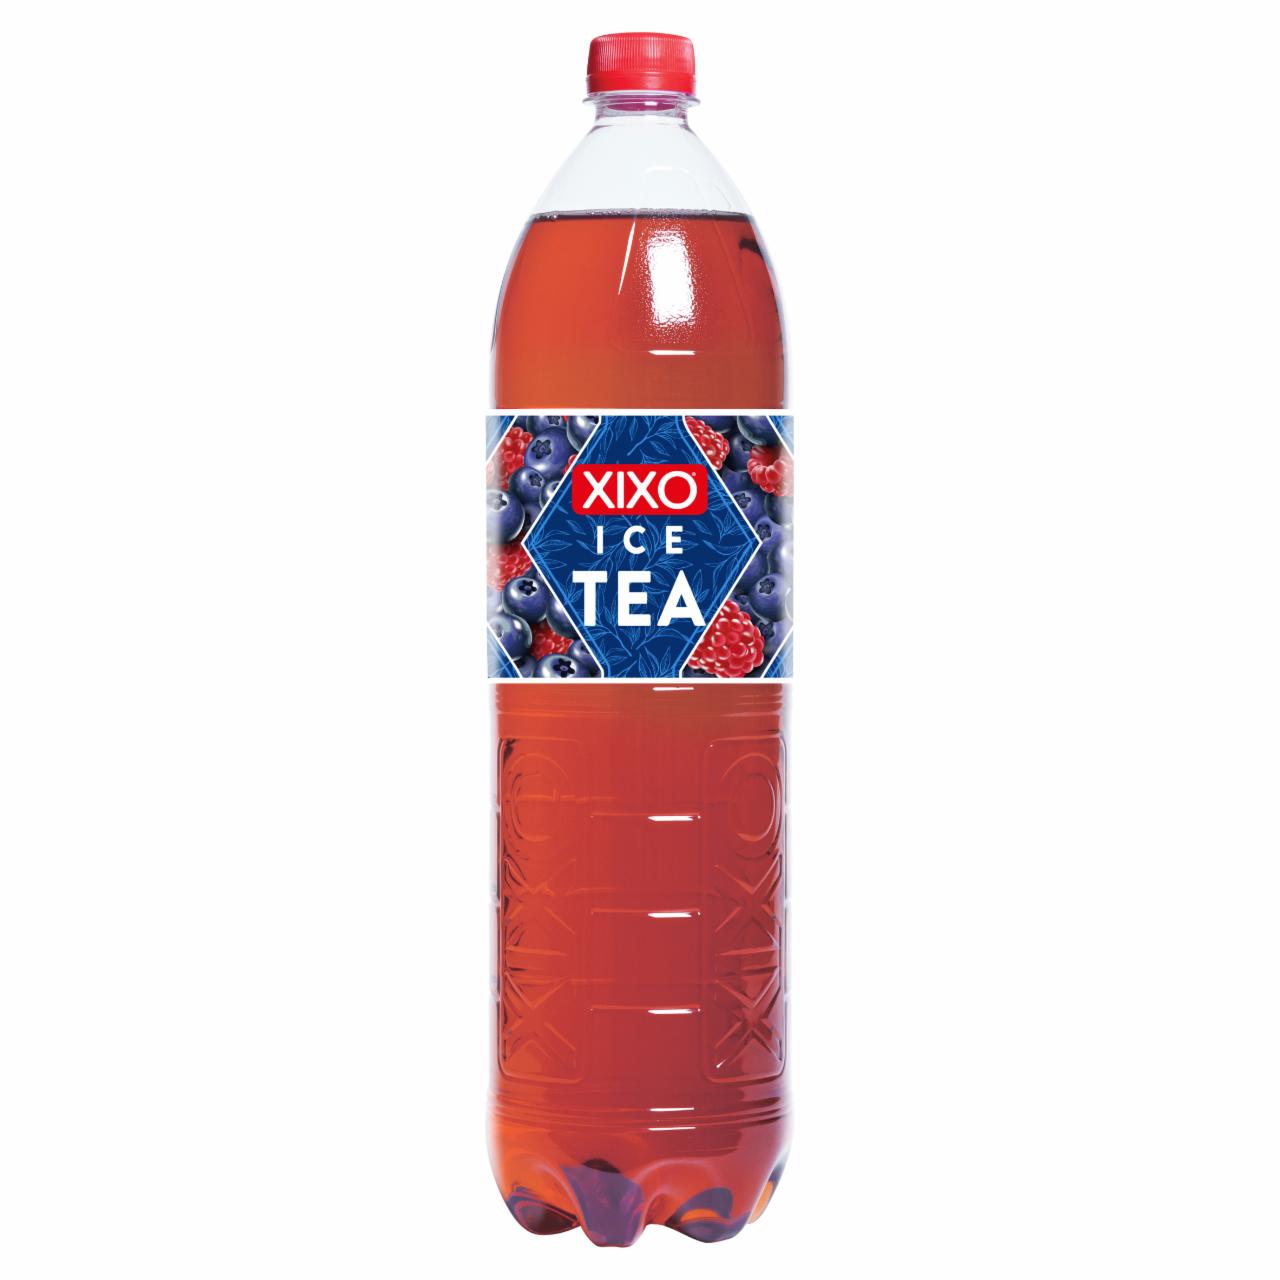 Képek - XIXO Ice Tea málna-áfonya ízű fekete tea 1,5 l